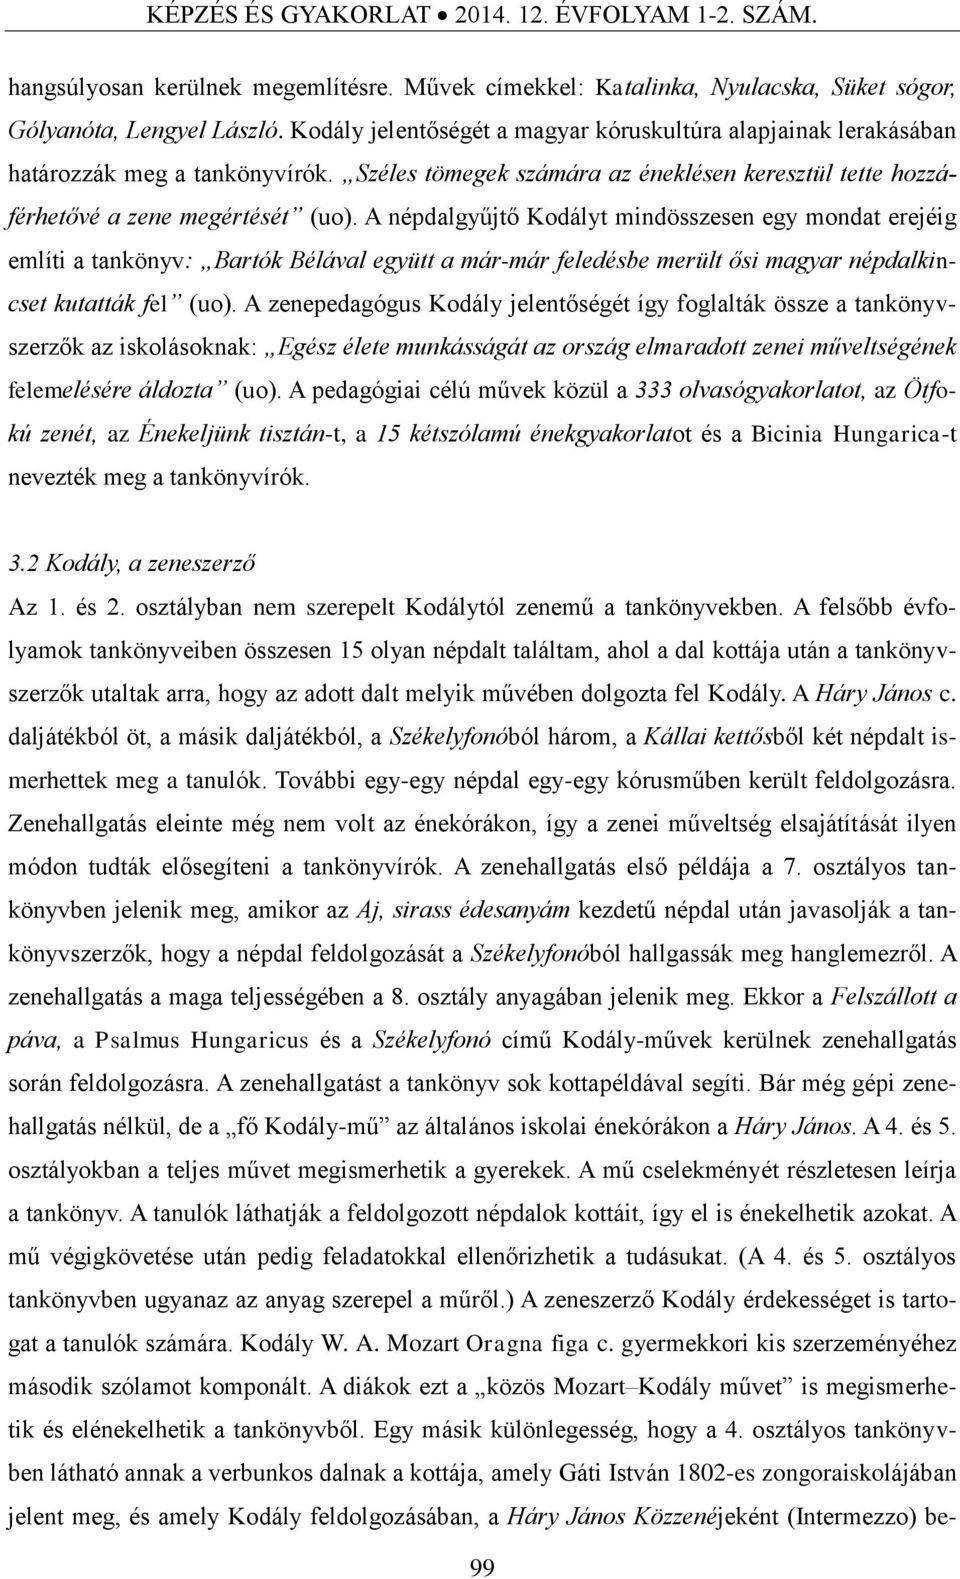 A népdalgyűjtő Kodályt mindösszesen egy mondat erejéig említi a tankönyv: Bartók Bélával együtt a már-már feledésbe merült ősi magyar népdalkincset kutatták fel (uo).